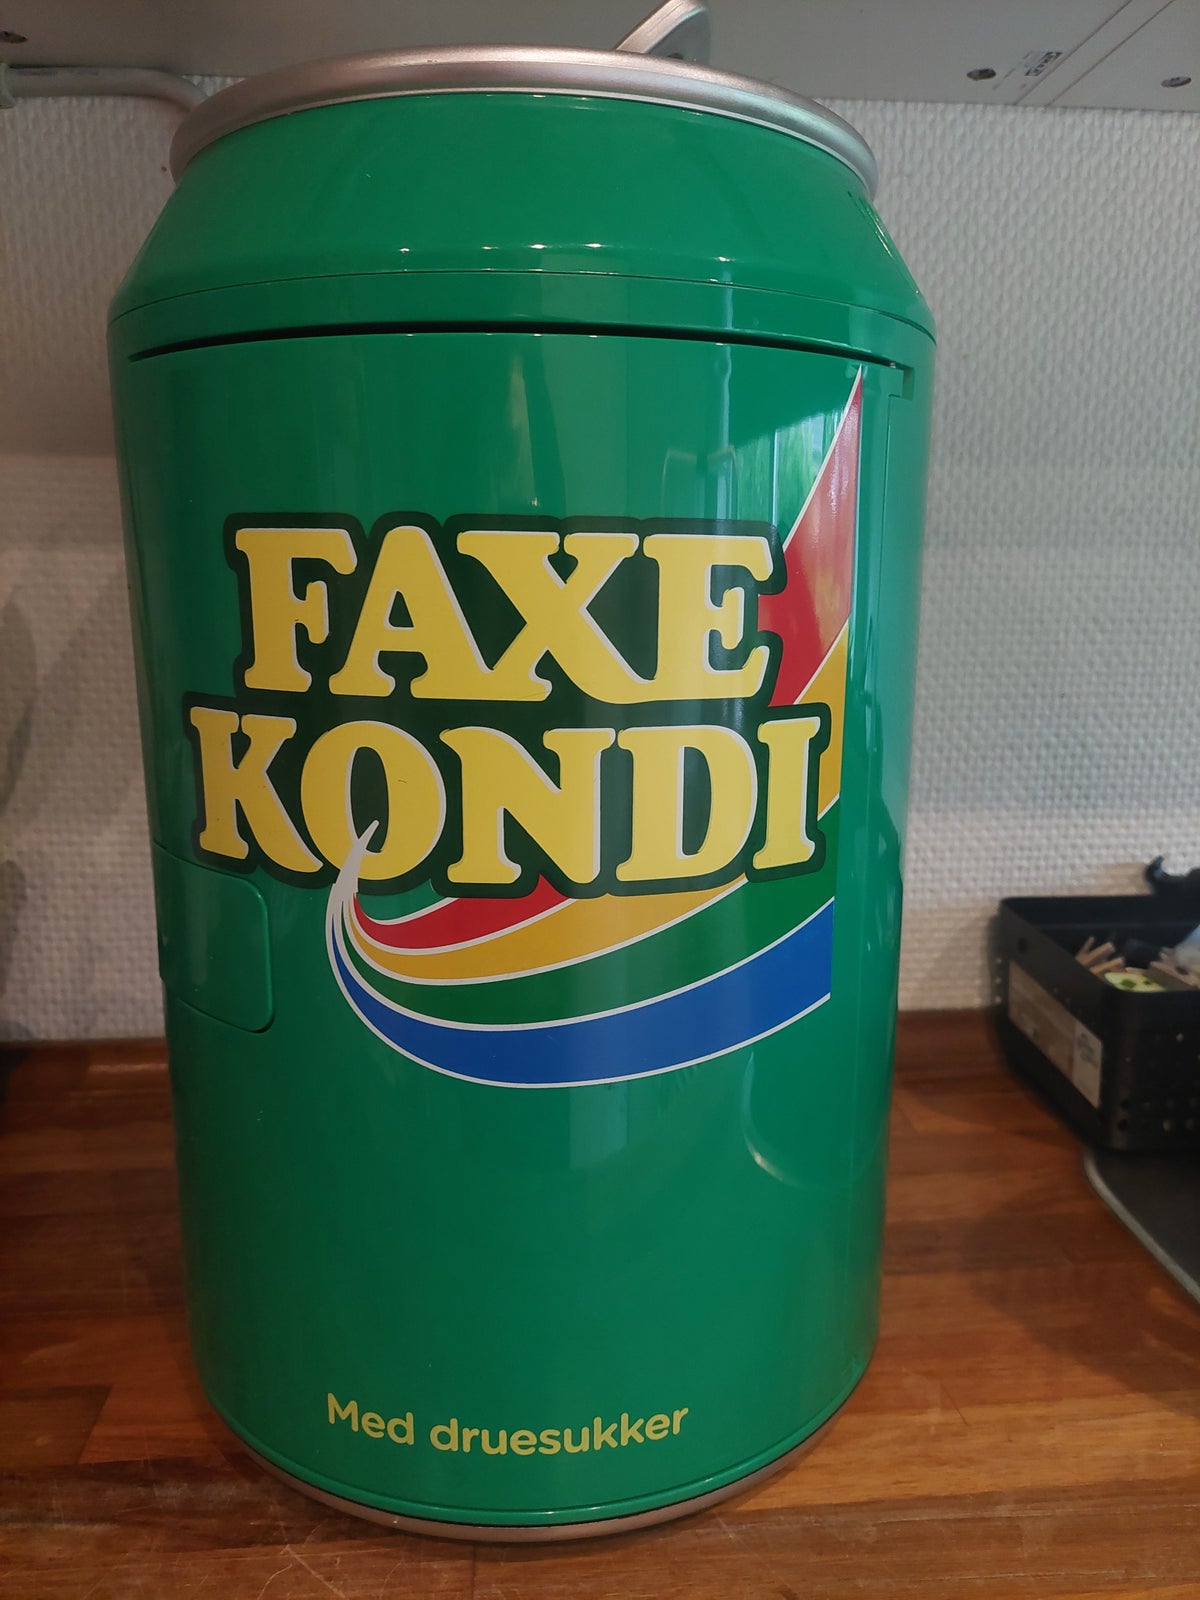 Andet køleskab, andet mærke Faxe kondi køkeskab, 12 liter